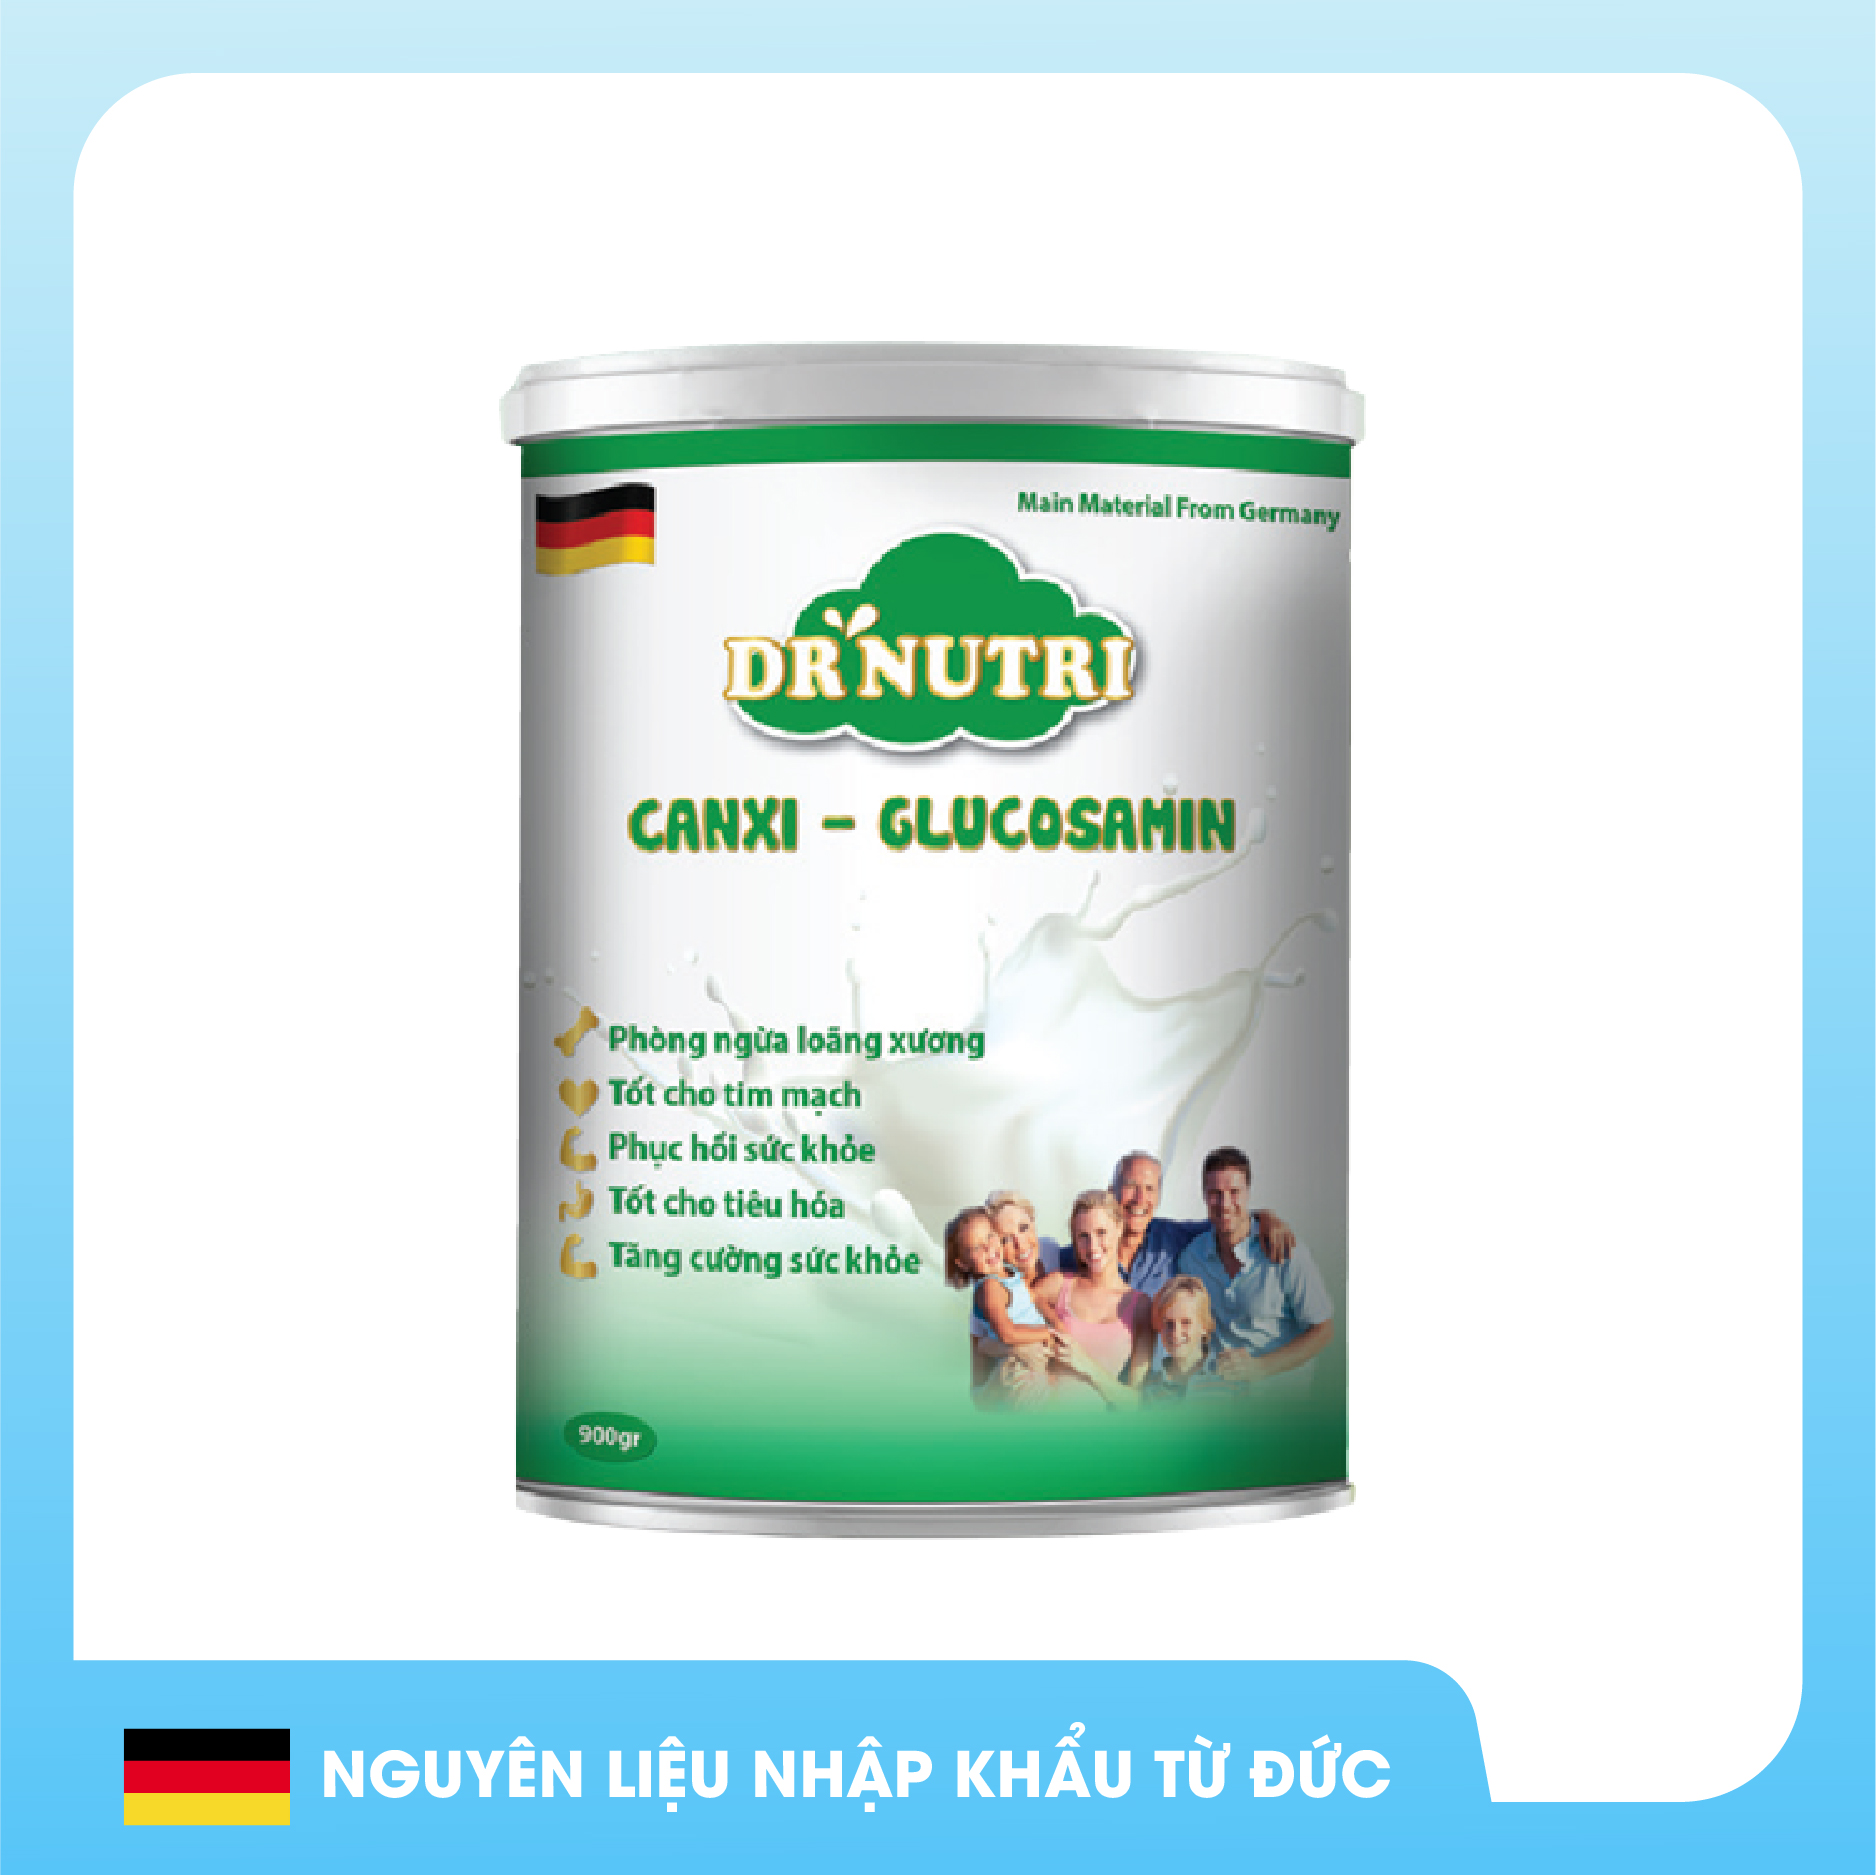 Dr Nutri Canxi - Glucosamin